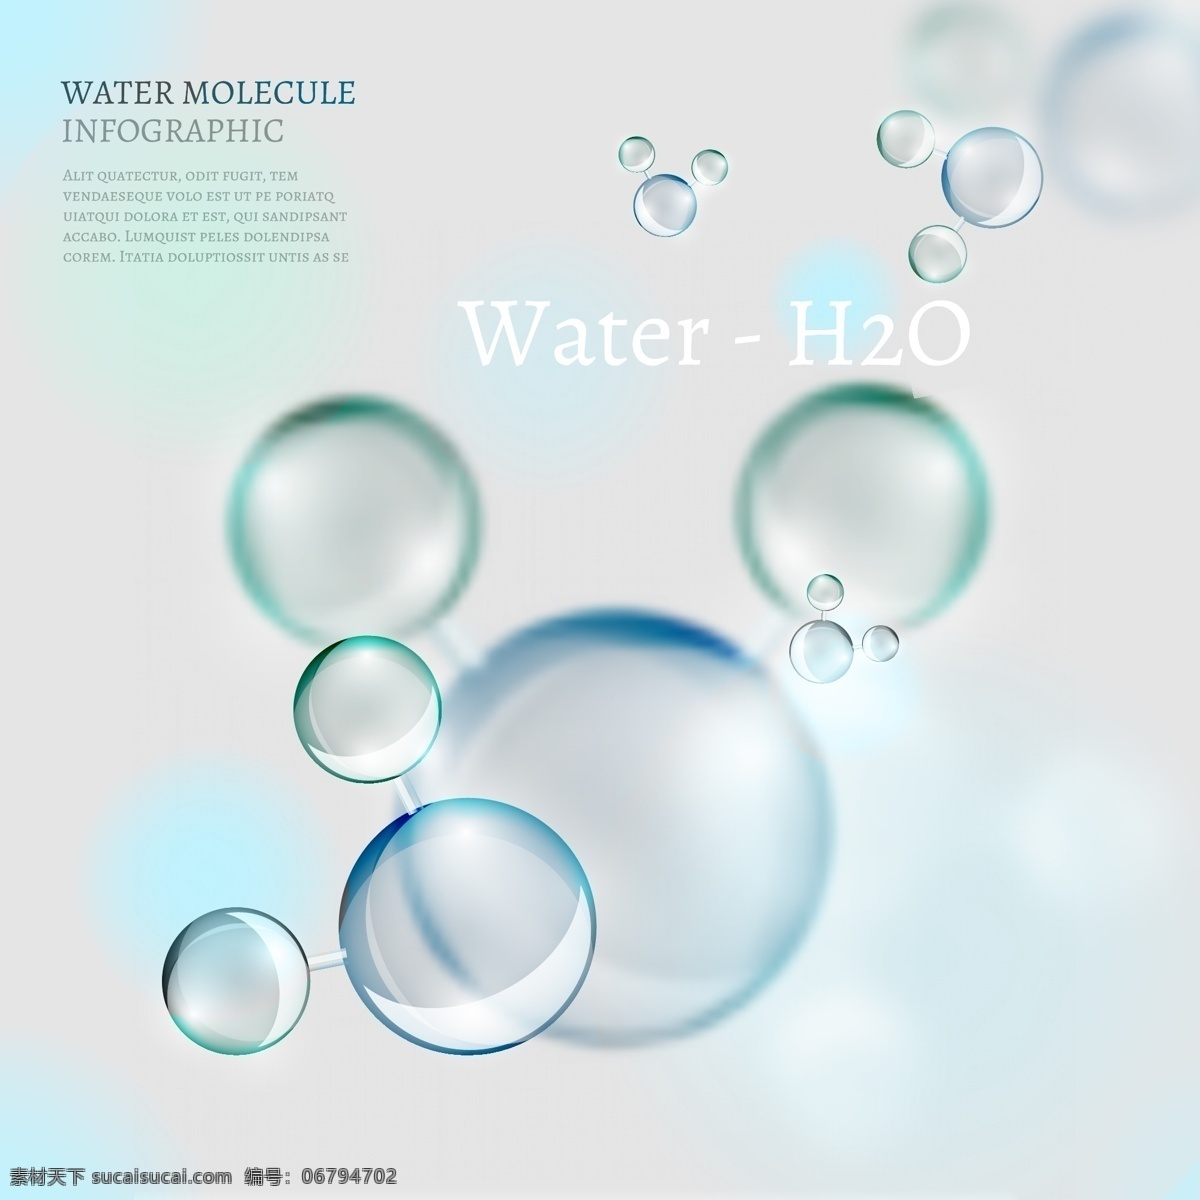 透 明水 分子 信息 图表 矢量 泡沫 dna 结构 水分子 细胞 分子结构 形状 球体 符号 医疗保健 连接 科学 原子 背景 生物 化学 生物技术 插图 微生物研究 文化艺术 绘画书法